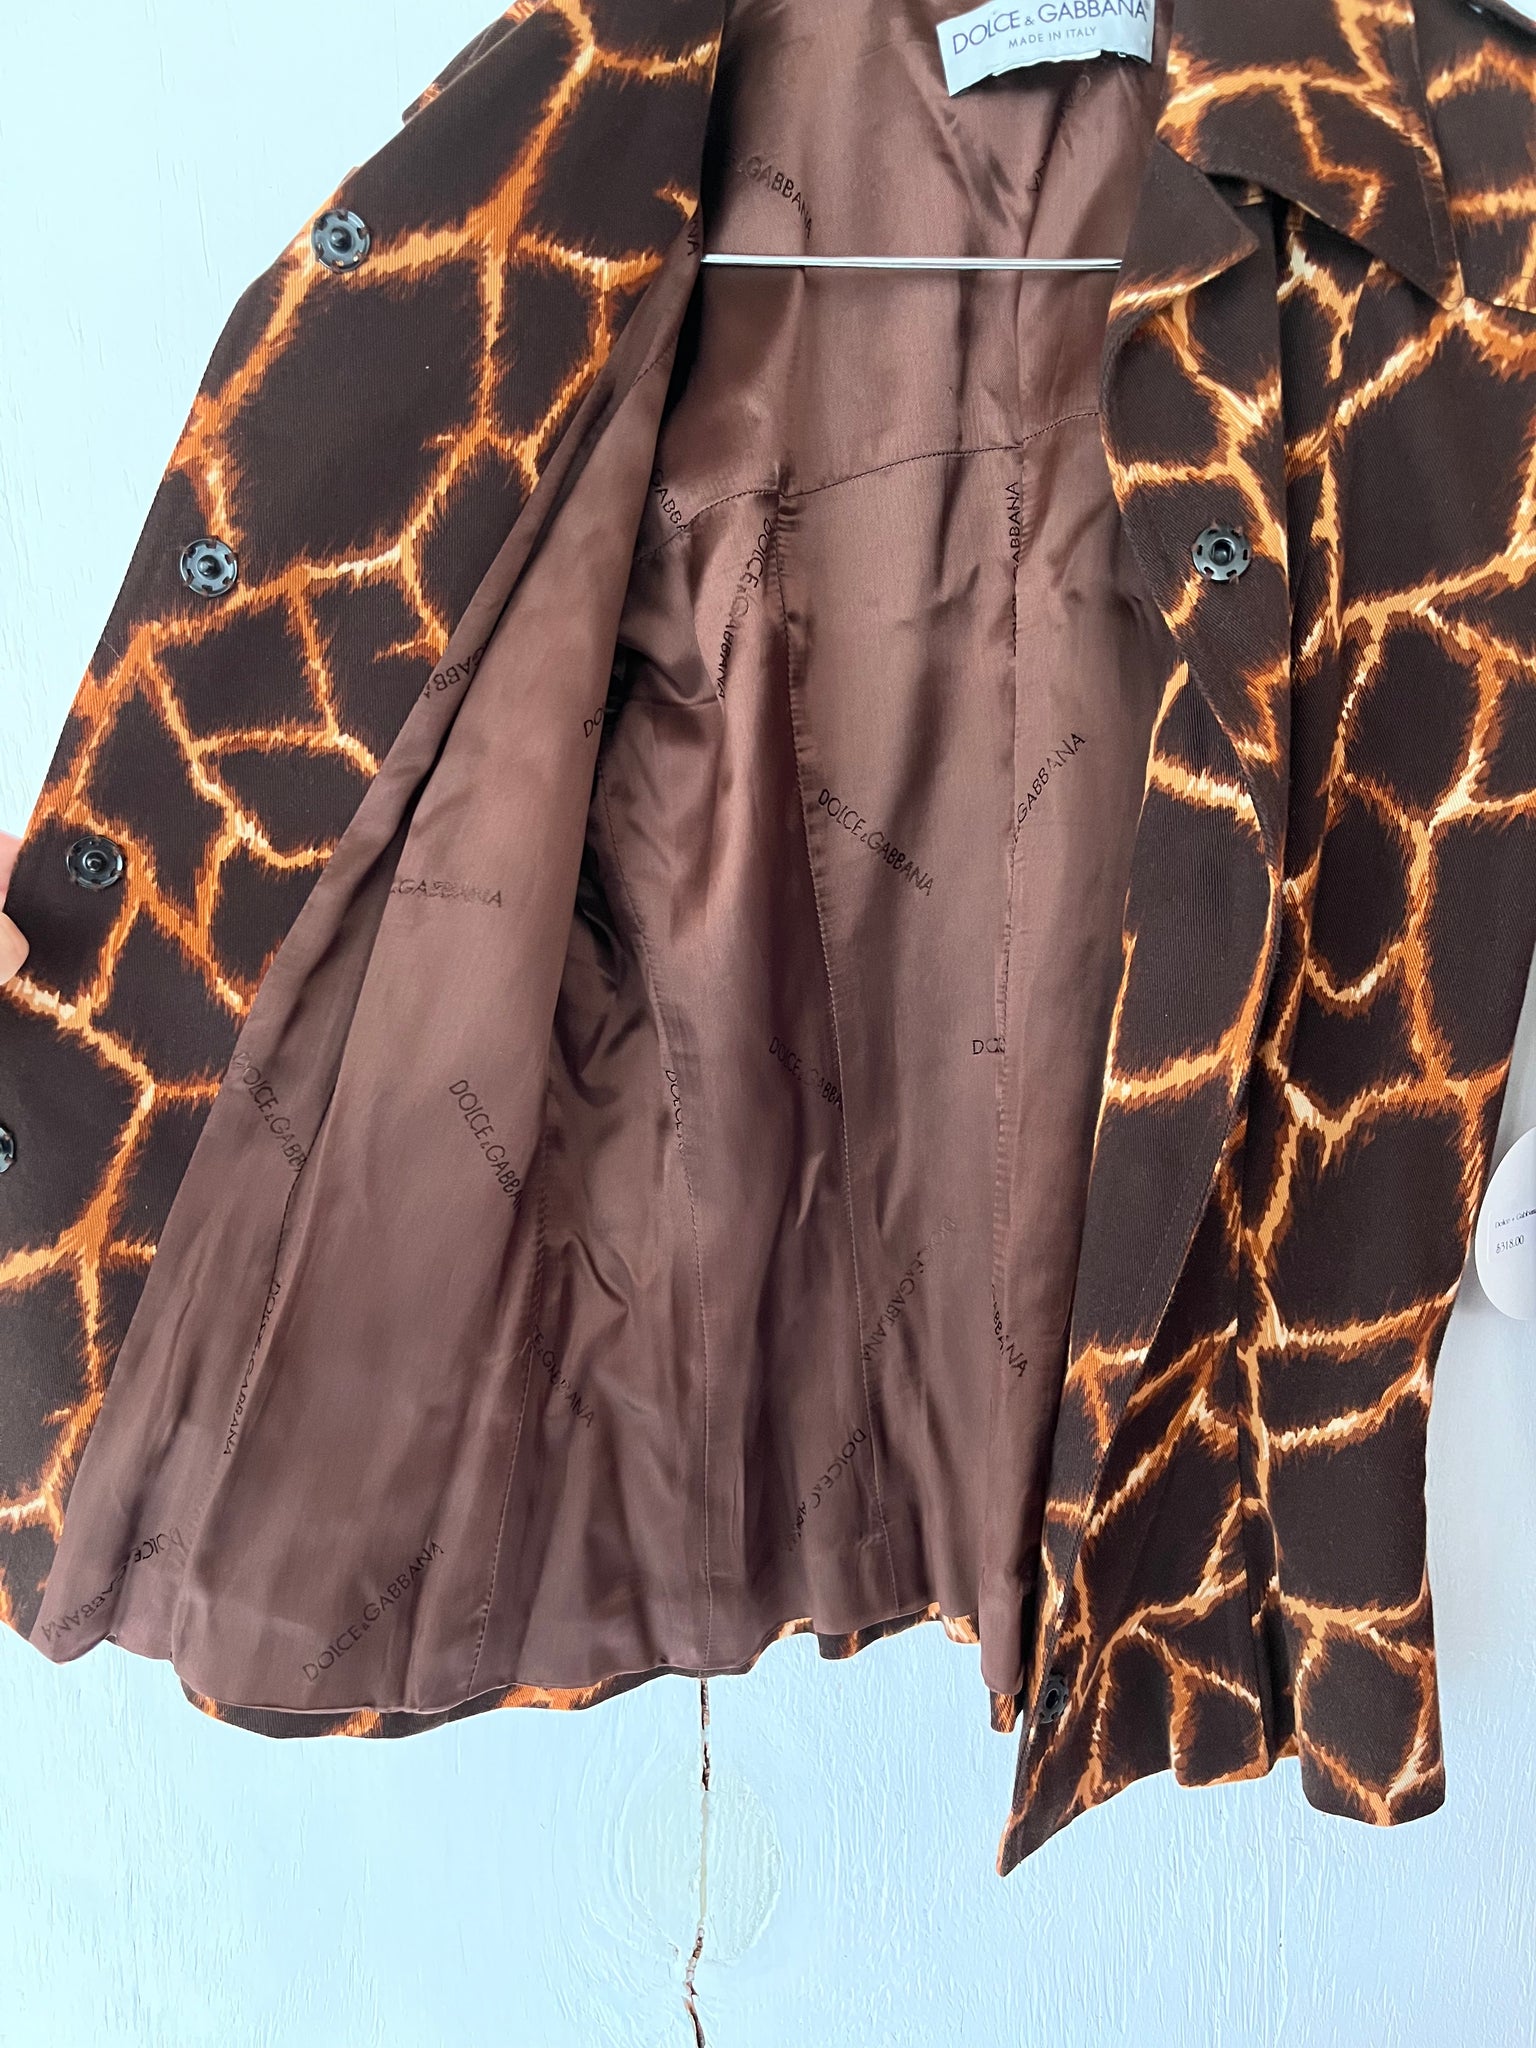 Dolce + Gabbana Giraffe Corset Suit